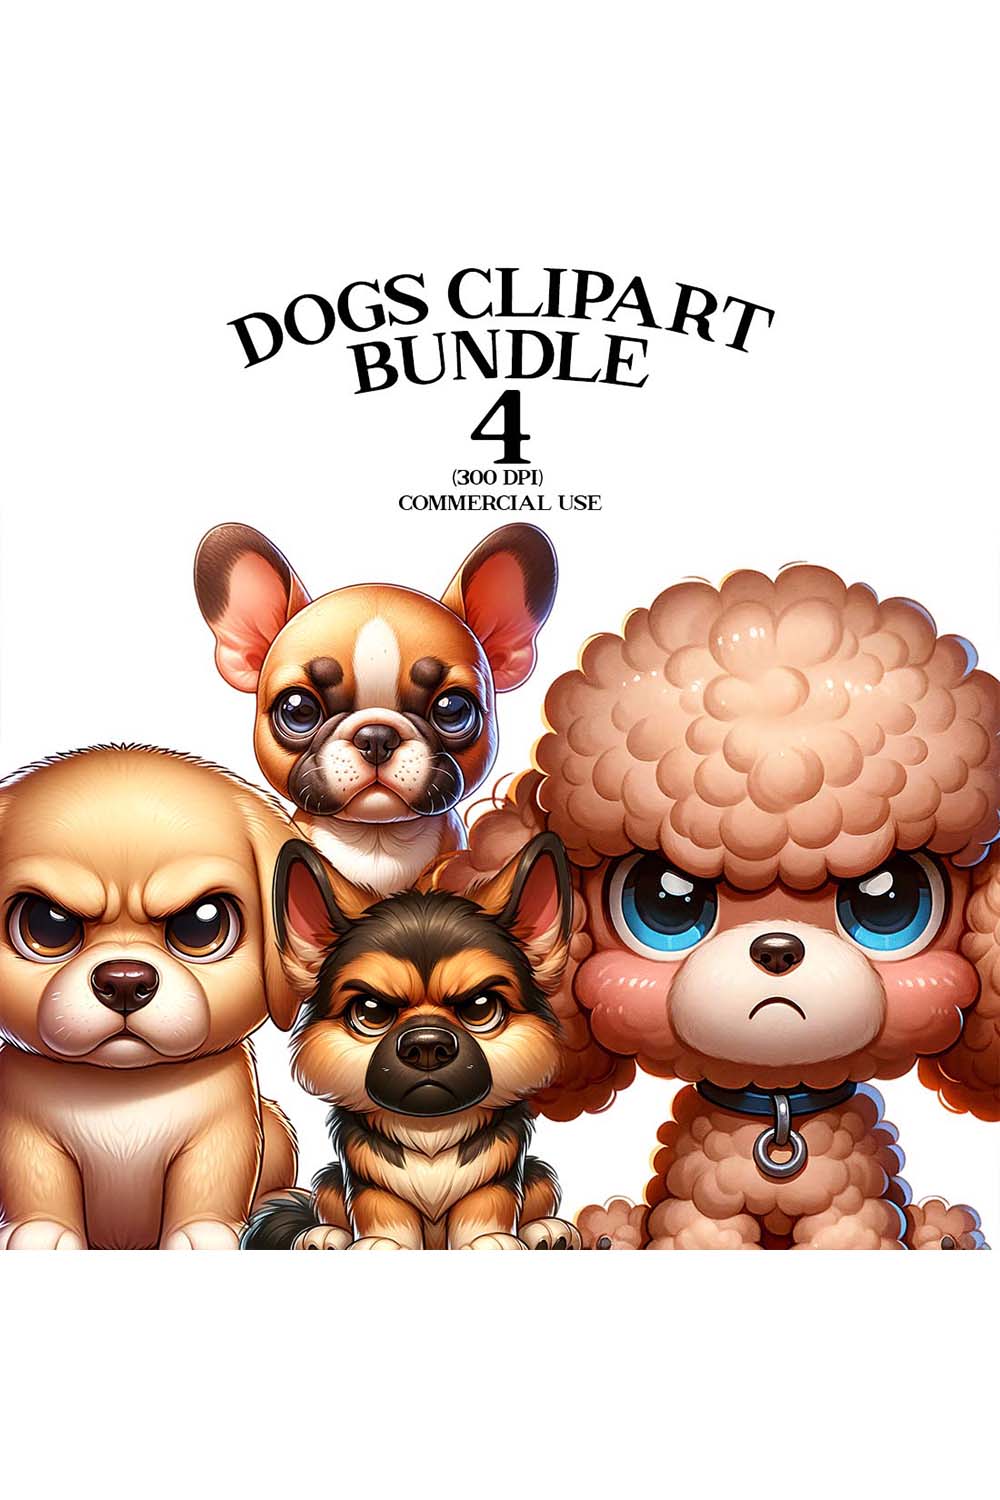 Dogs Clipart Bundle | Animals Clipart Bundle | Clipart pinterest preview image.